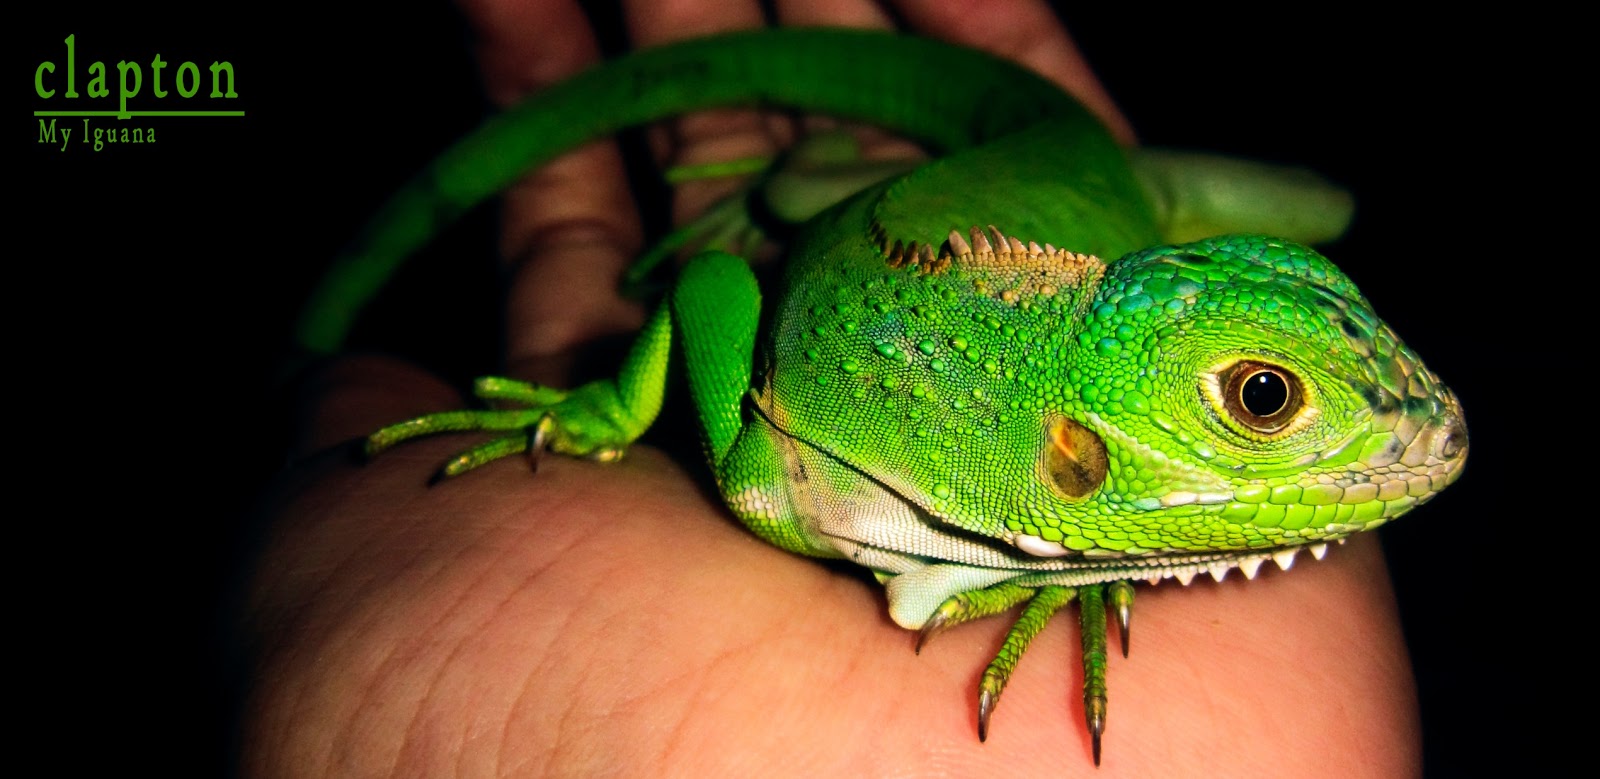 namahewan2016 iguana hijau terbesar Images